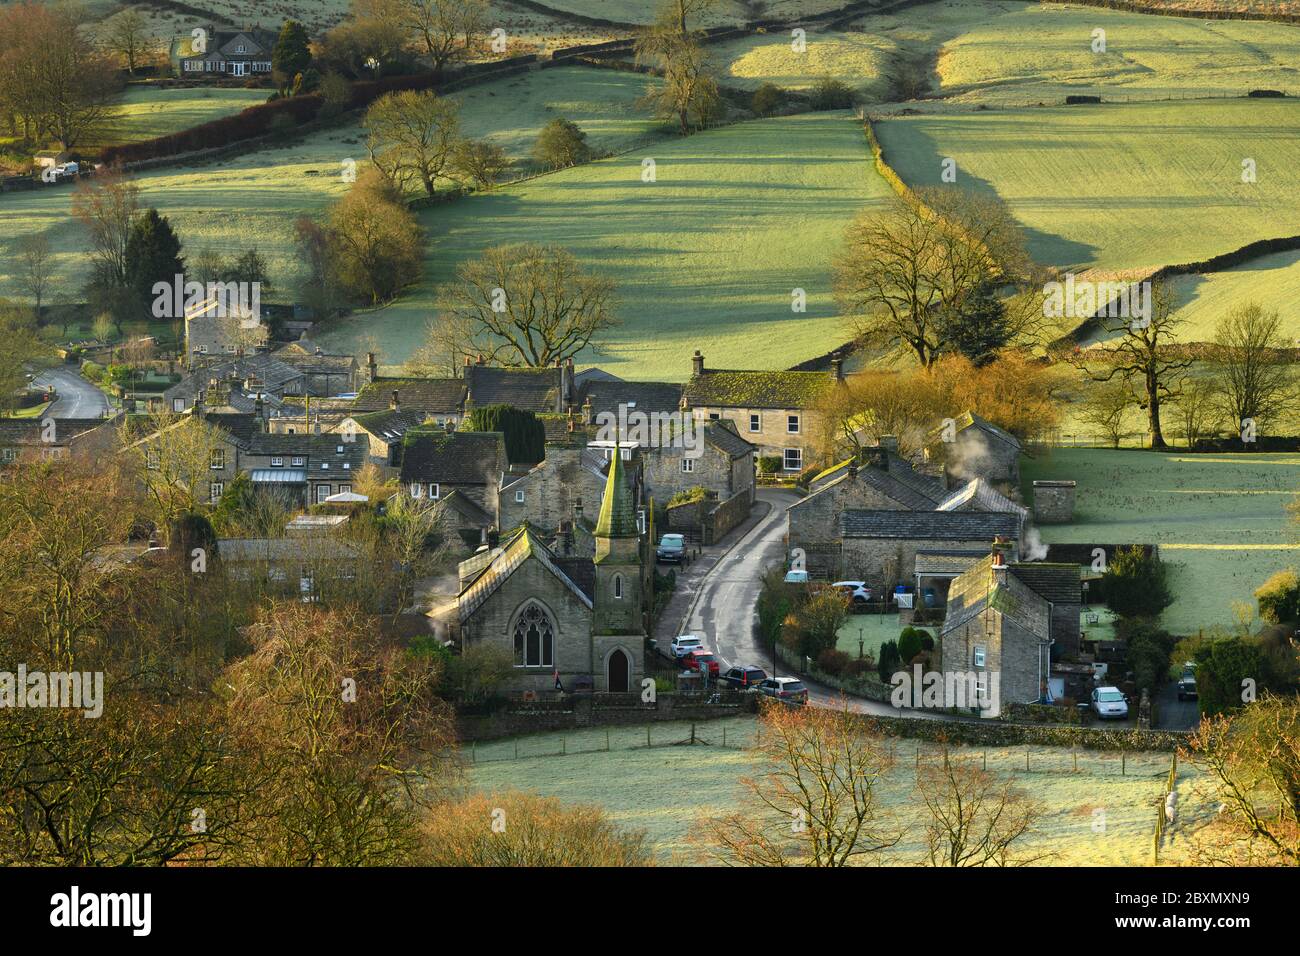 Burnsall (landschaftlich reizvolles Yorkshire Dales Dorf) im Tal, attraktive Hütten, Landstraße, grüne Hügel Felder (sonnigen Wintermorgen) - England, GB, Großbritannien Stockfoto